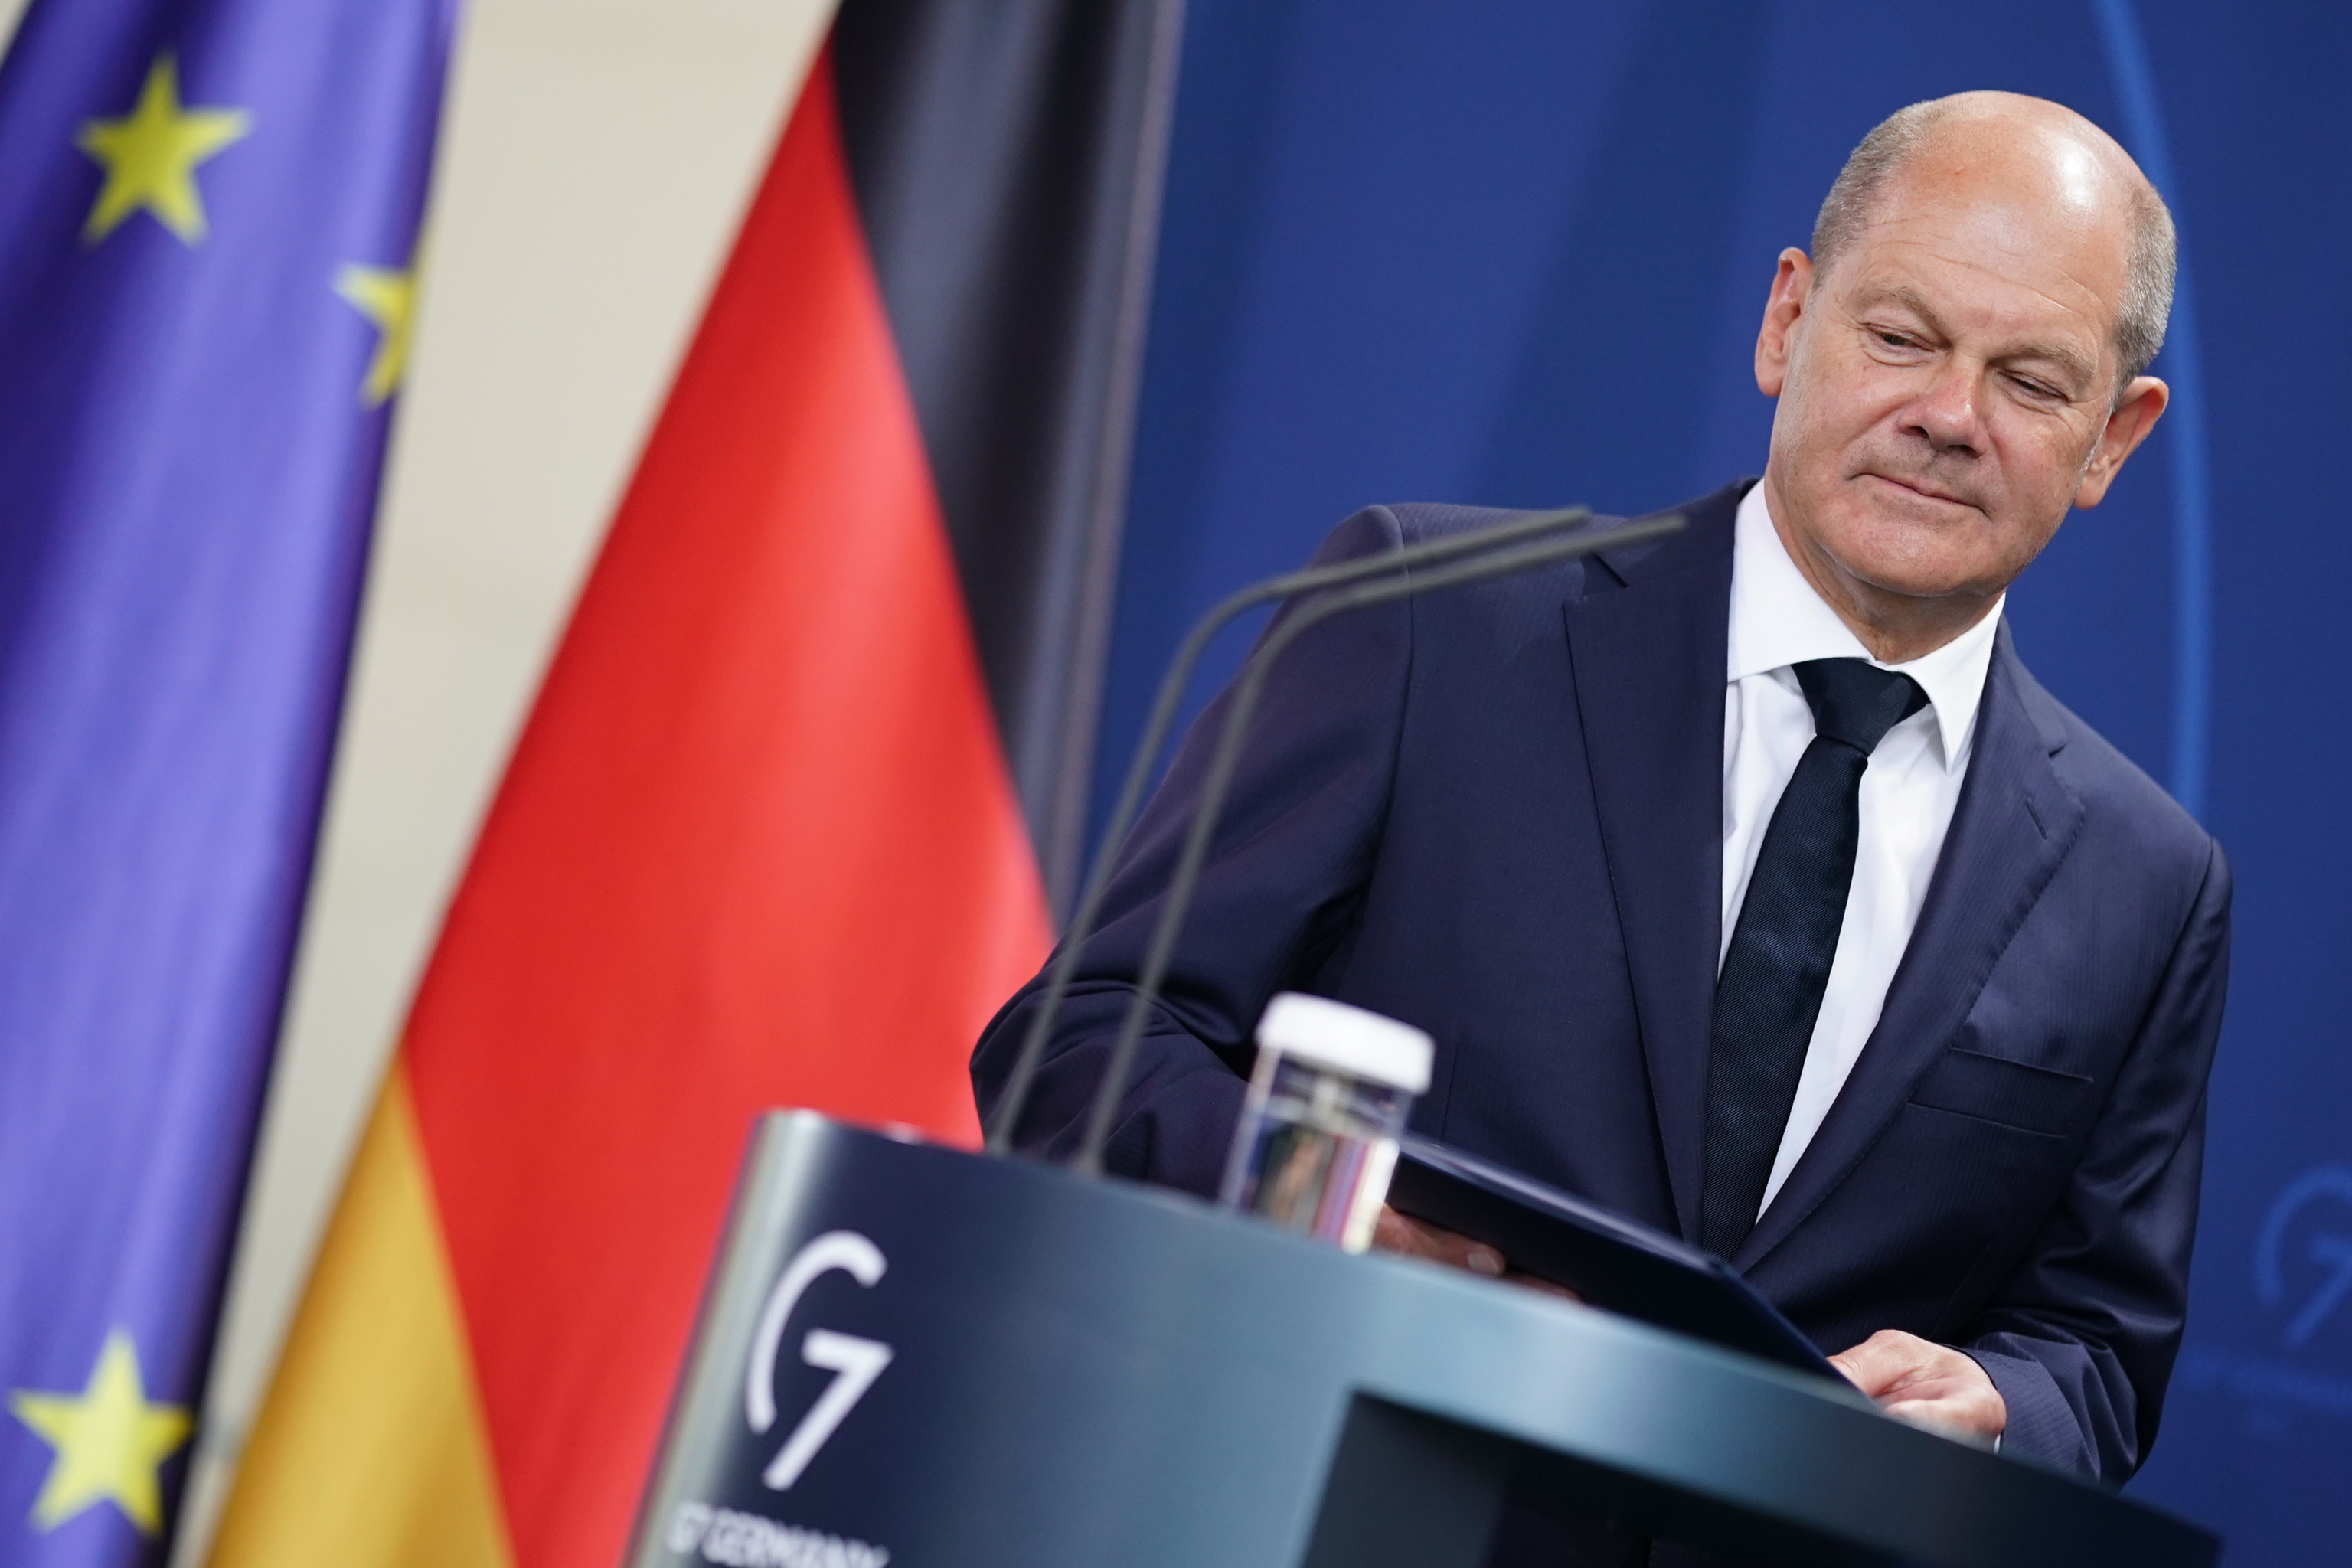 El canciller alemán Olaf Scholz llega para hacer una declaración en la cancillería en Berlín, Alemania, 18 de agosto de 2022. El canciller alemán, Olaf Scholz, ha anunciado que bajará el IVA sobre el consumo de gas al 7 por ciento en lugar del 19.